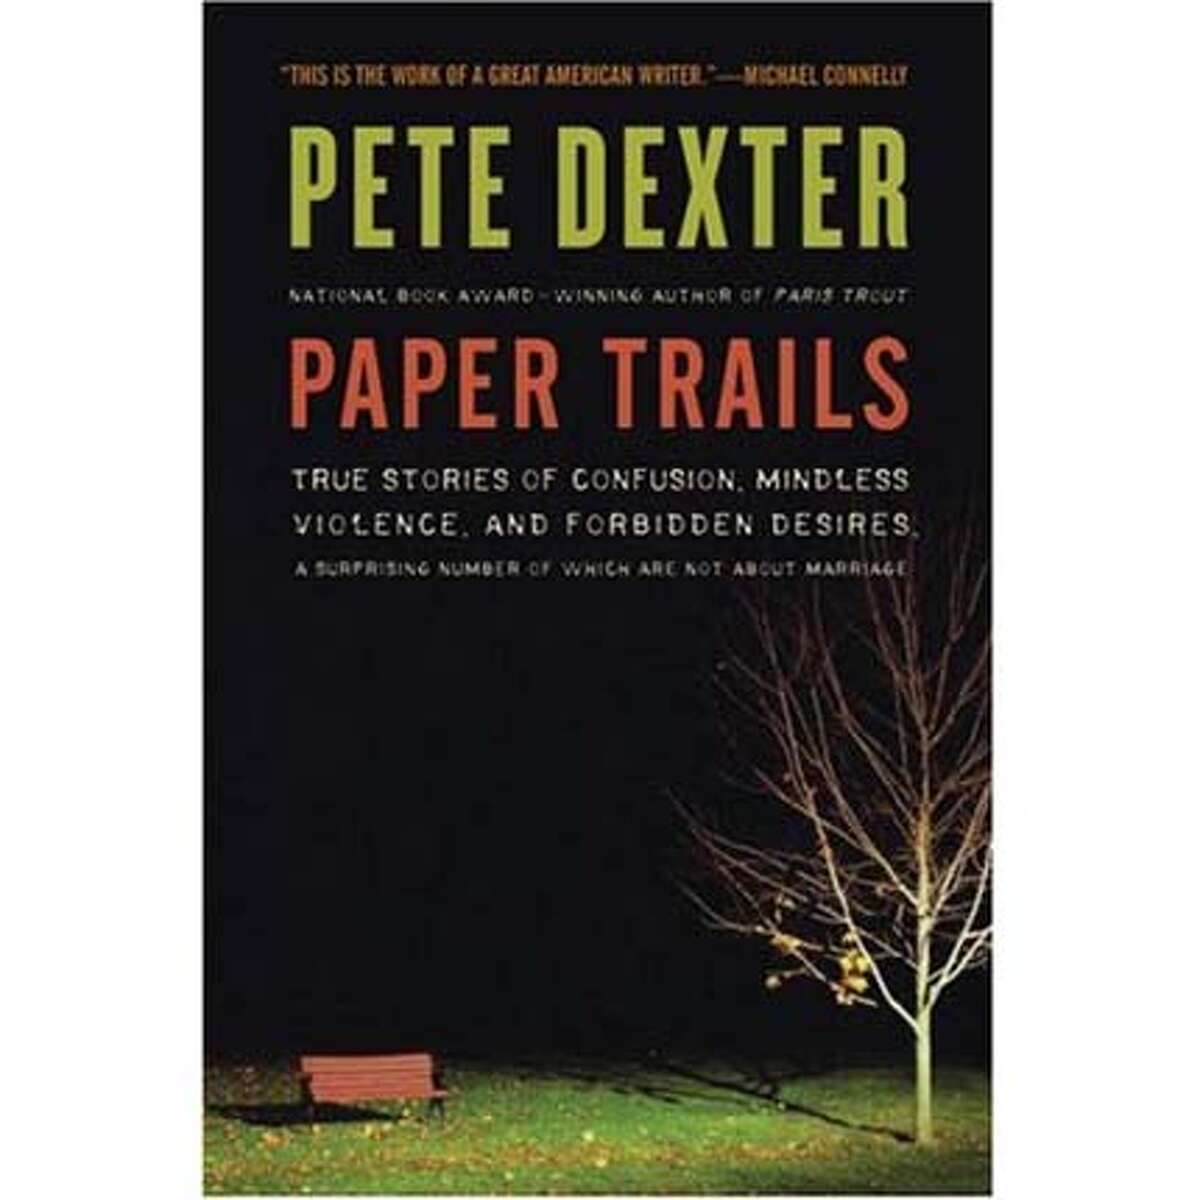 "Paper Trails" by Pete Dexter